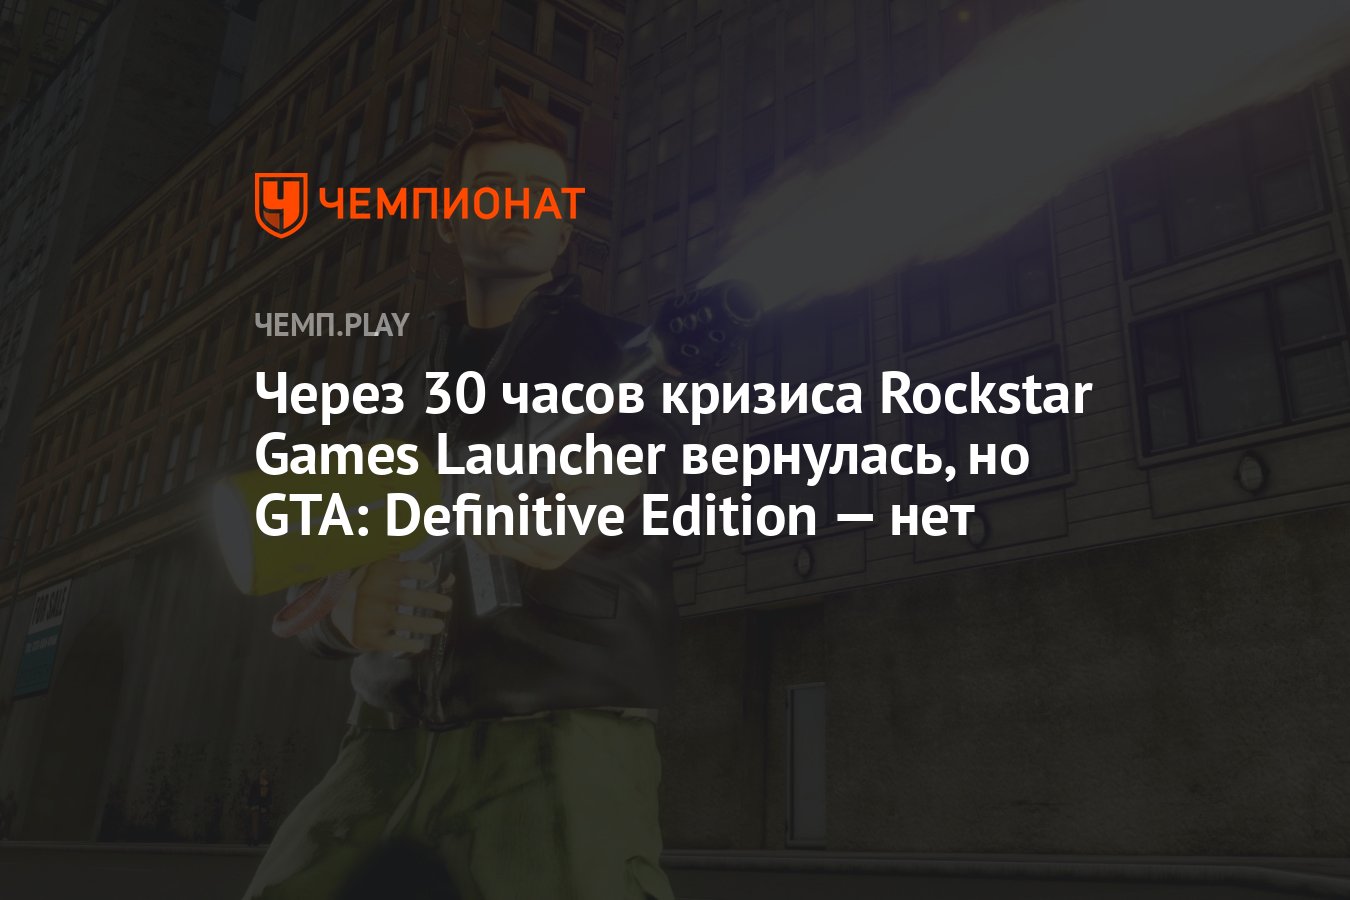 Unable to launch game. Бесконечное обновление Rockstar games Launcher.